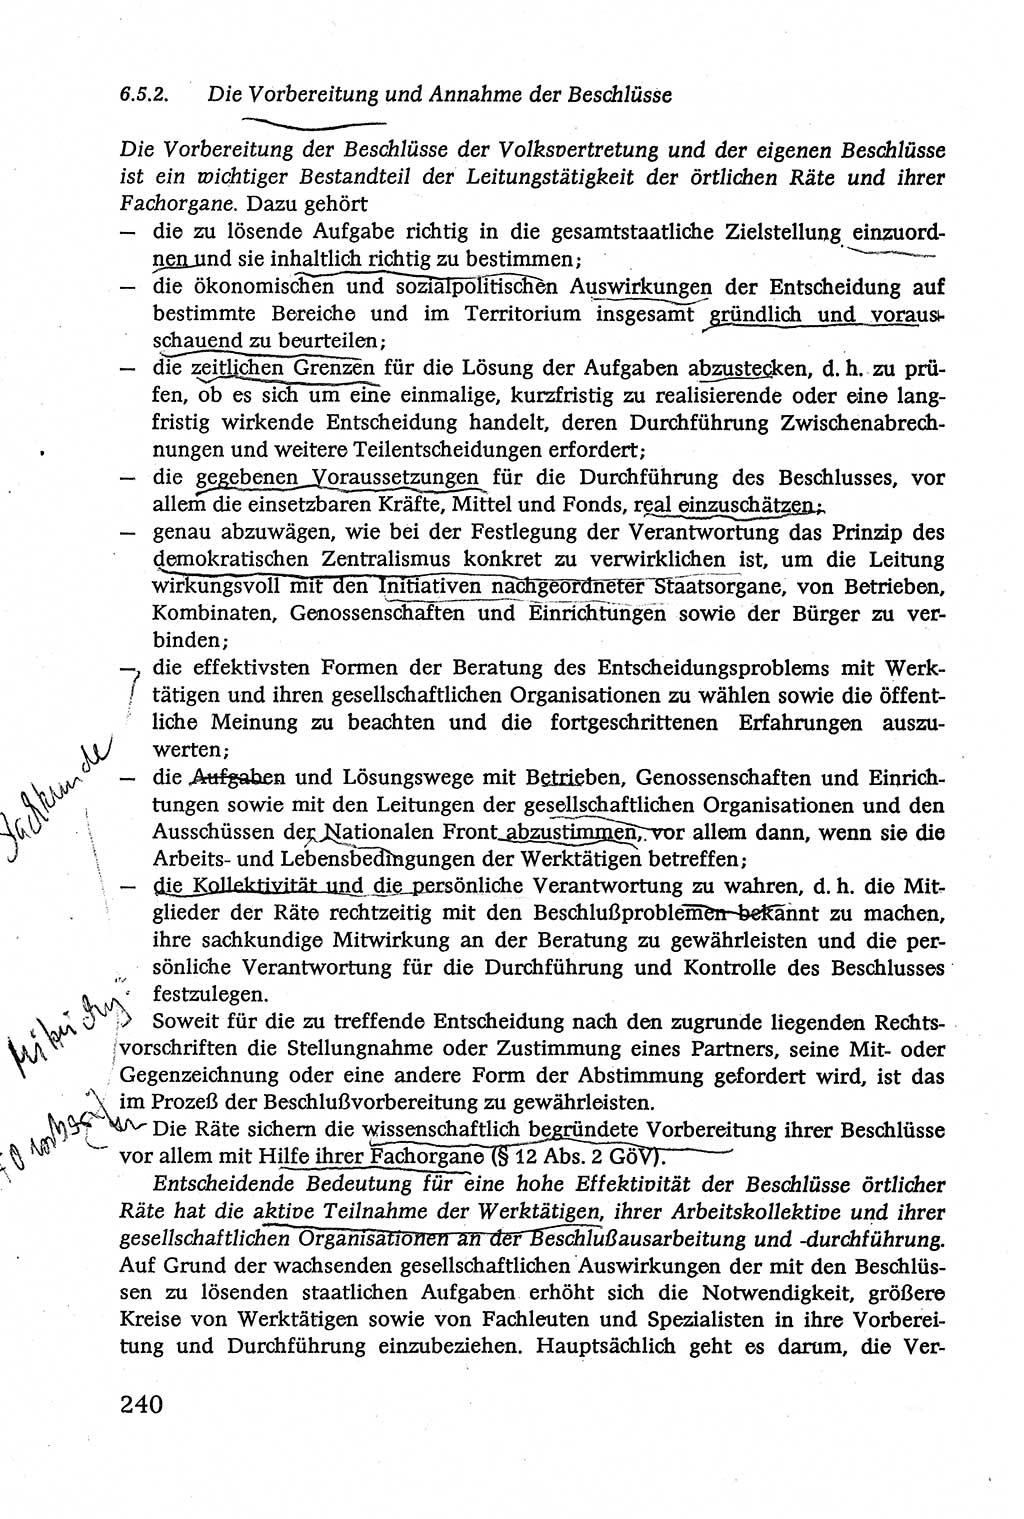 Verwaltungsrecht [Deutsche Demokratische Republik (DDR)], Lehrbuch 1979, Seite 240 (Verw.-R. DDR Lb. 1979, S. 240)